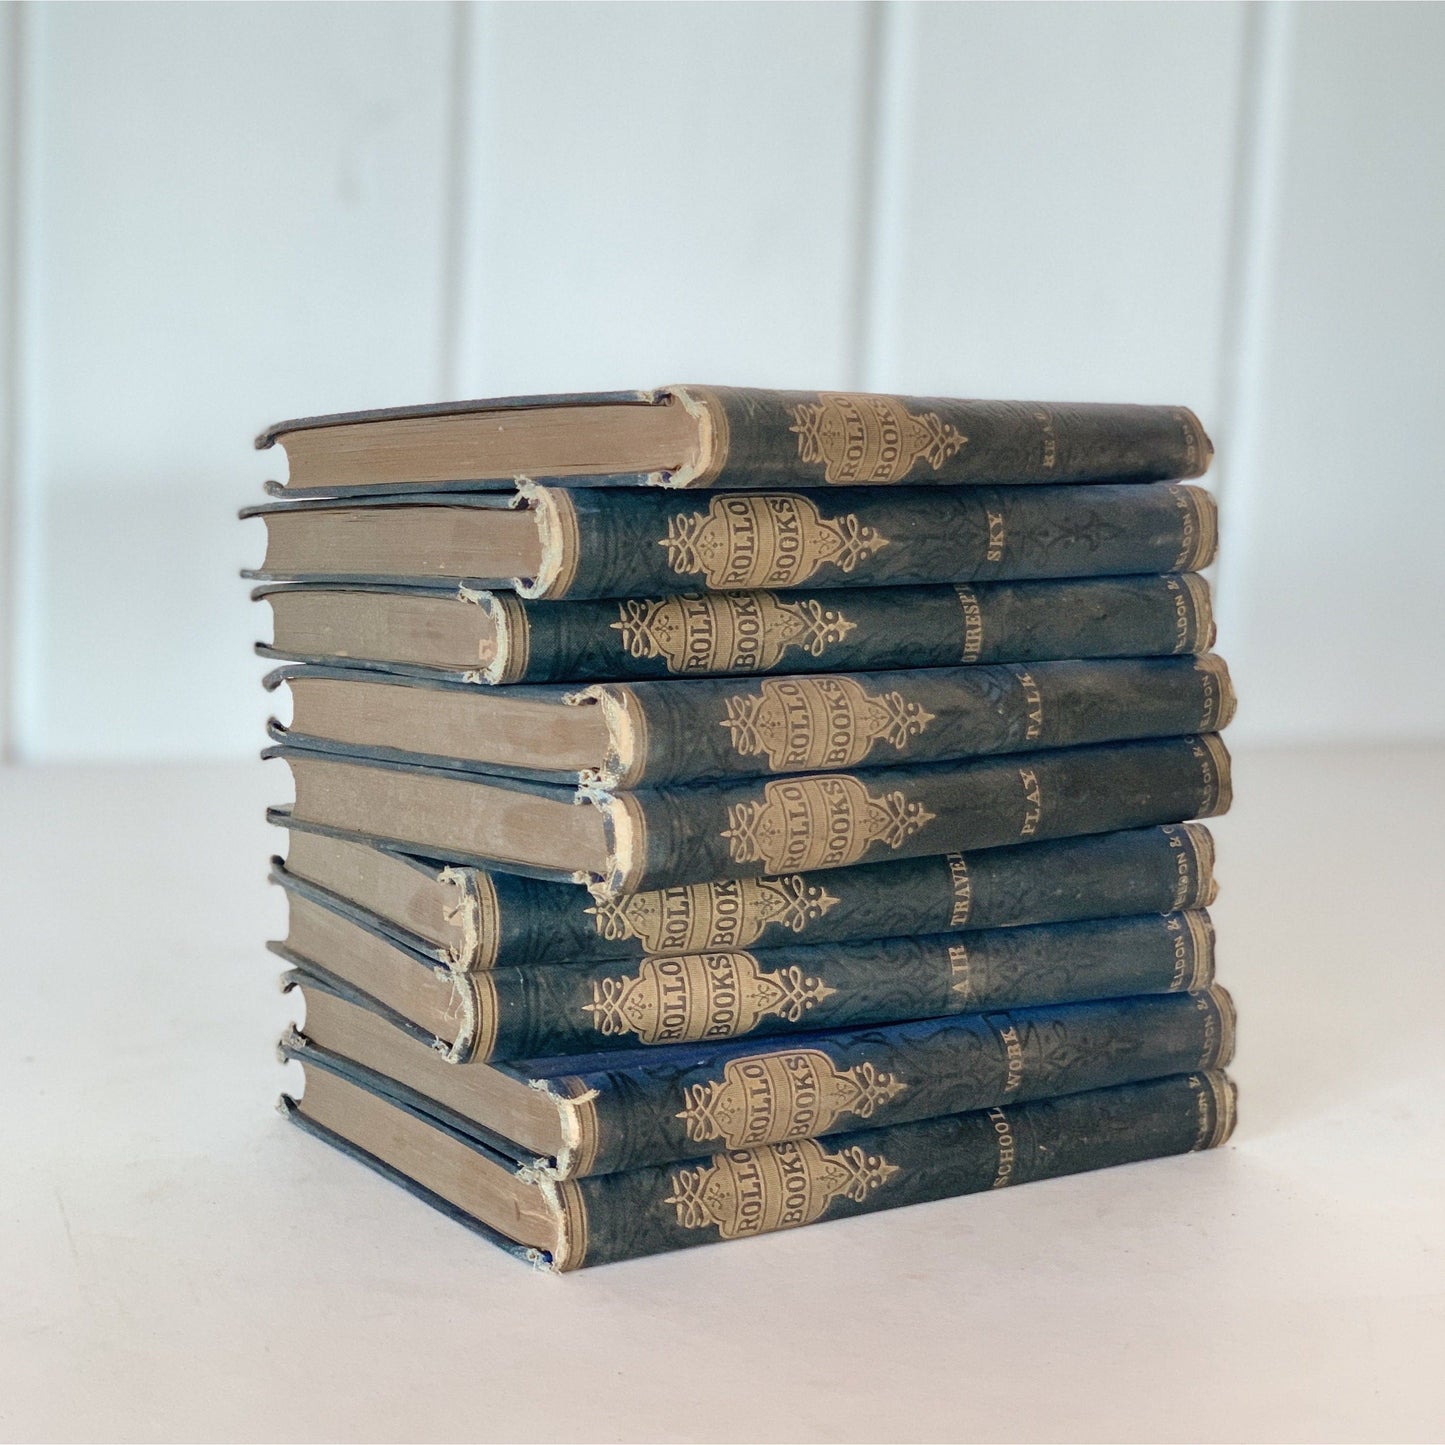 The Rollo Books, Antique 1896 Ornate Blue Petite Books, Children's Book Series